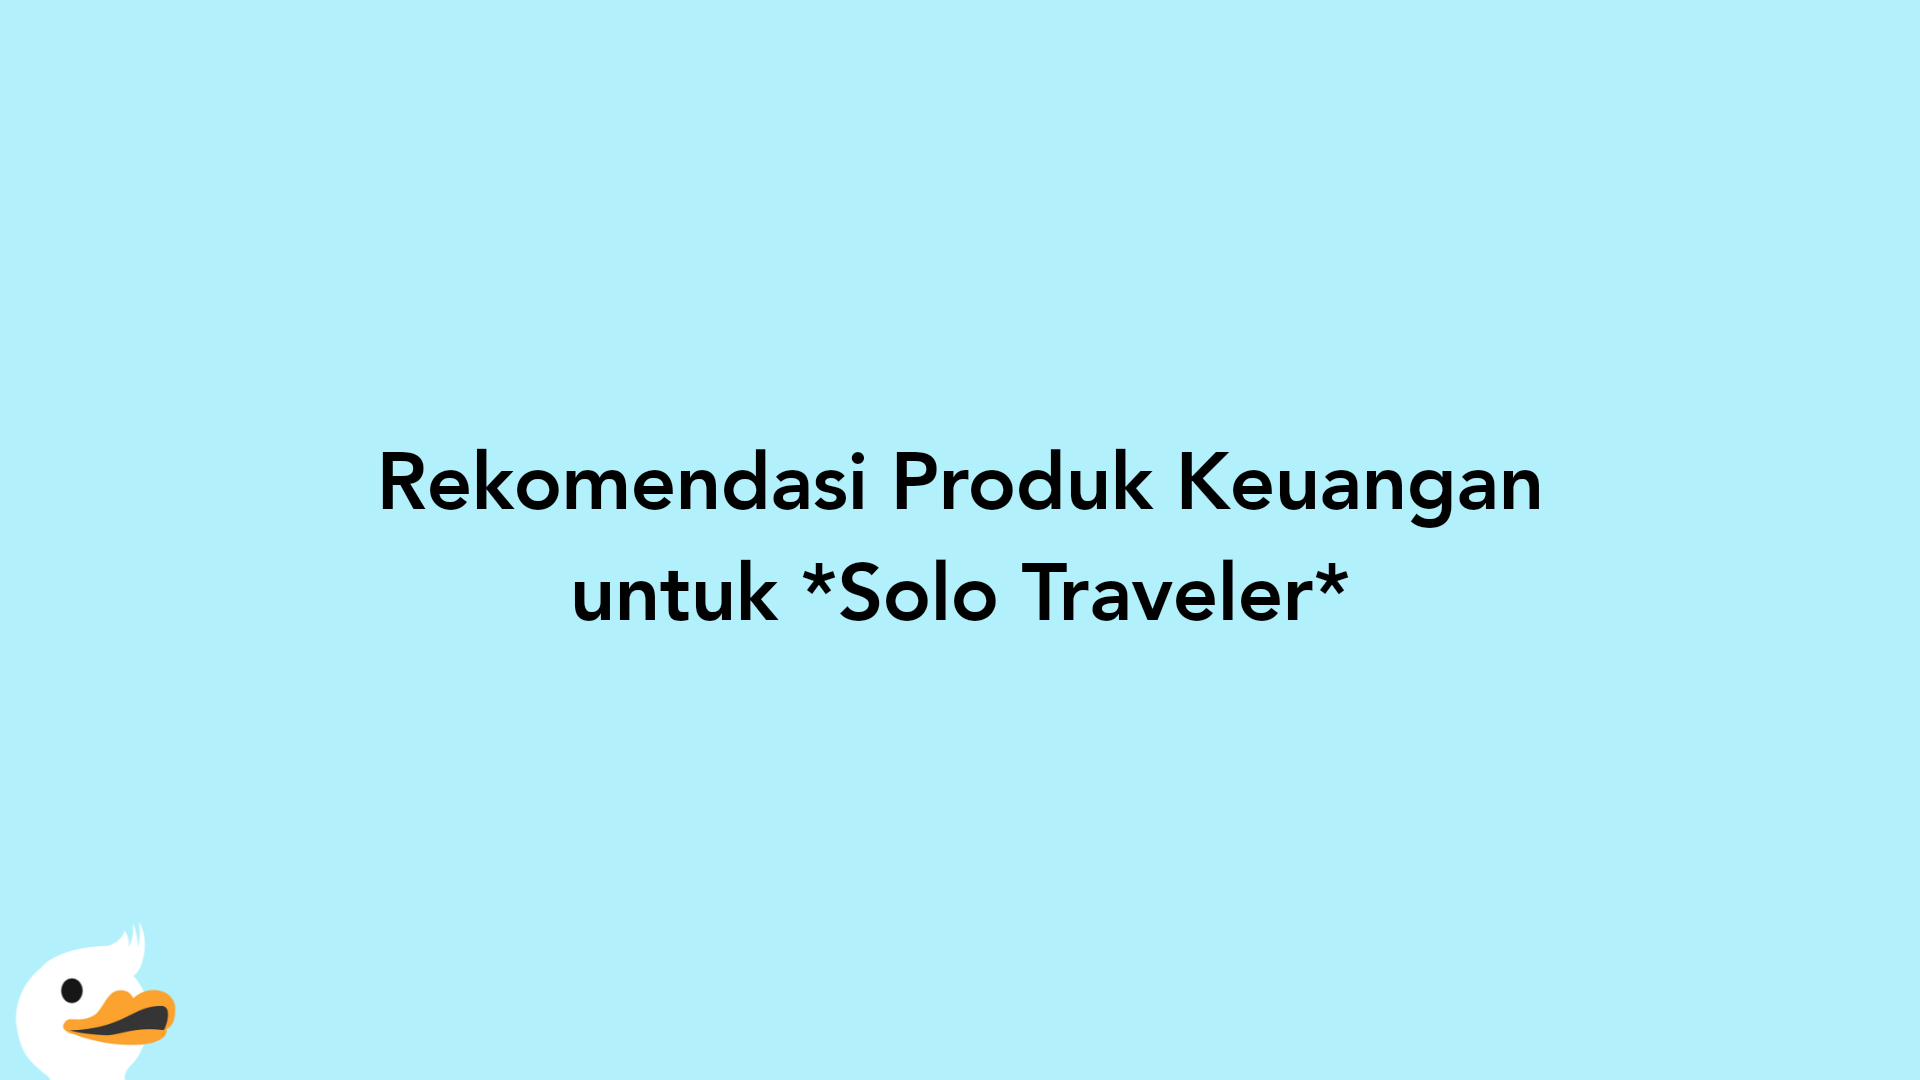 Rekomendasi Produk Keuangan untuk Solo Traveler